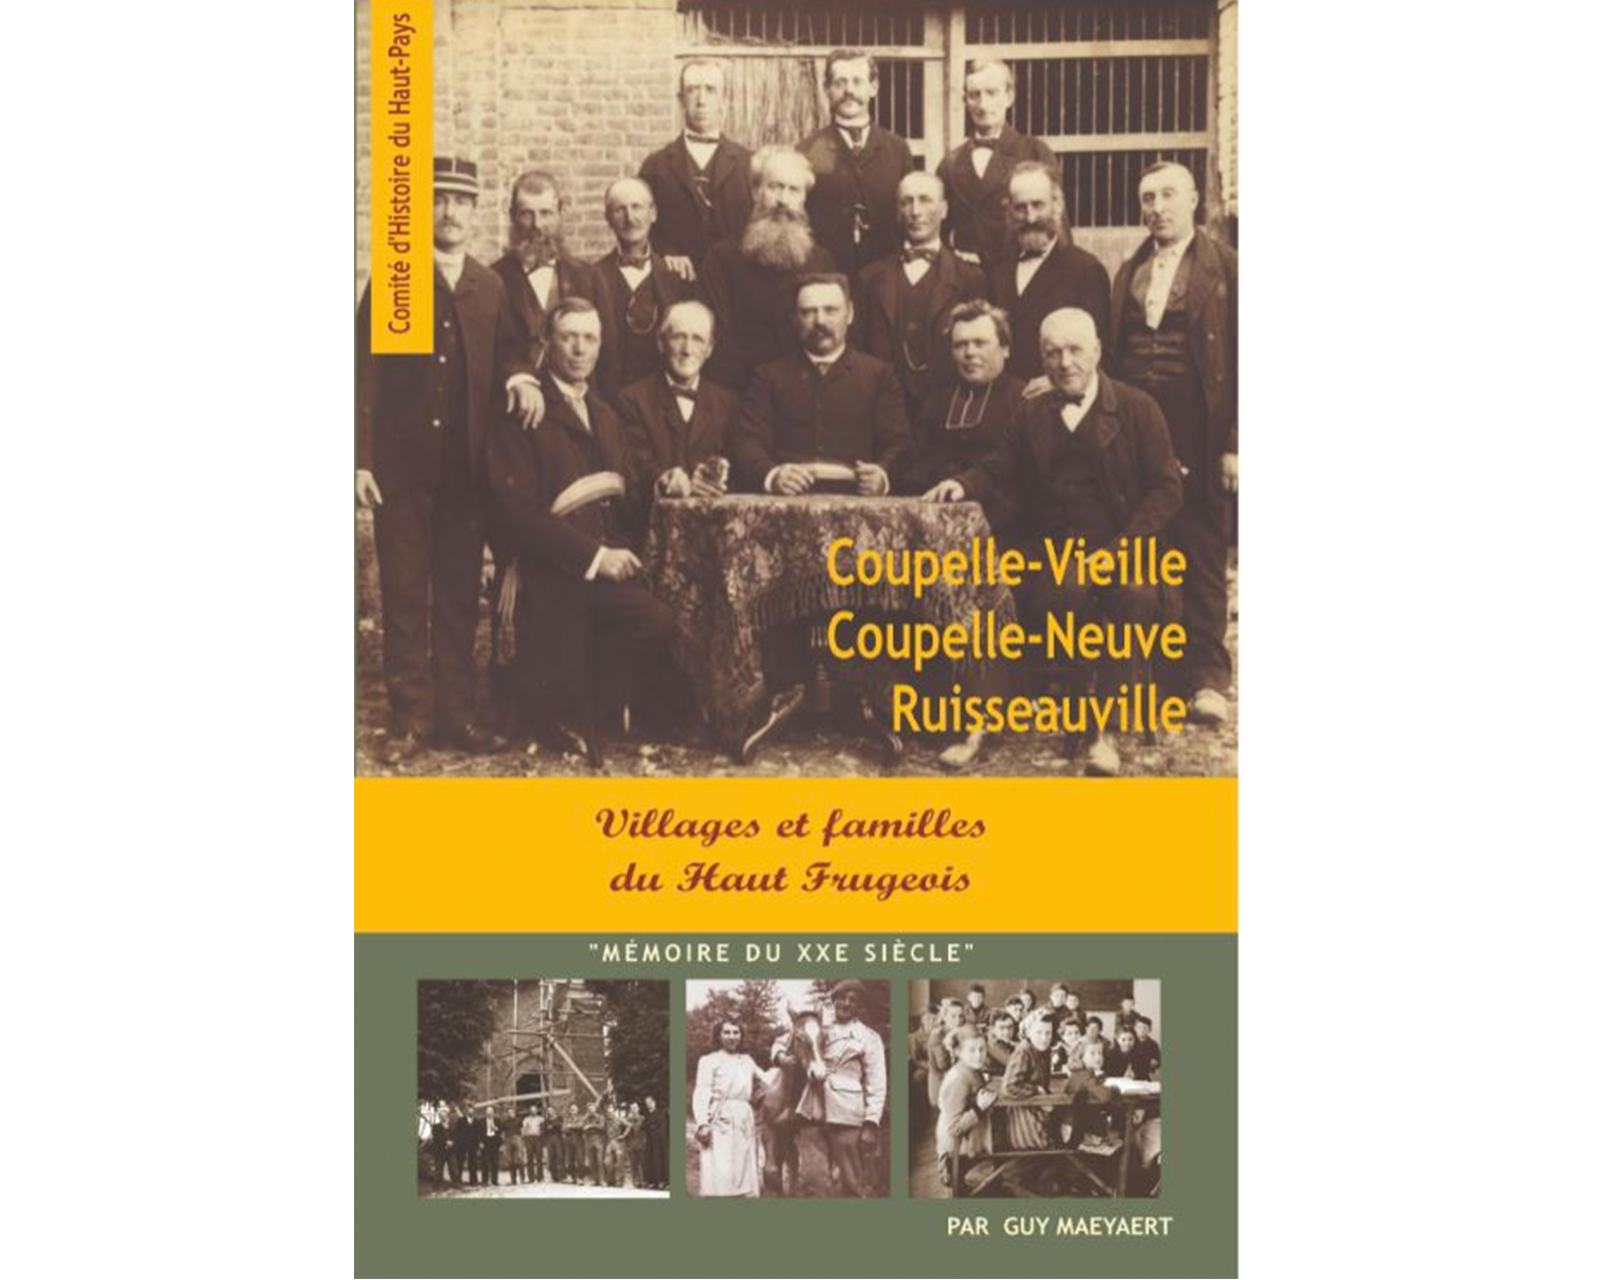 Coupelle-Neuve, Coupelle-Vieille, et Ruisseauville